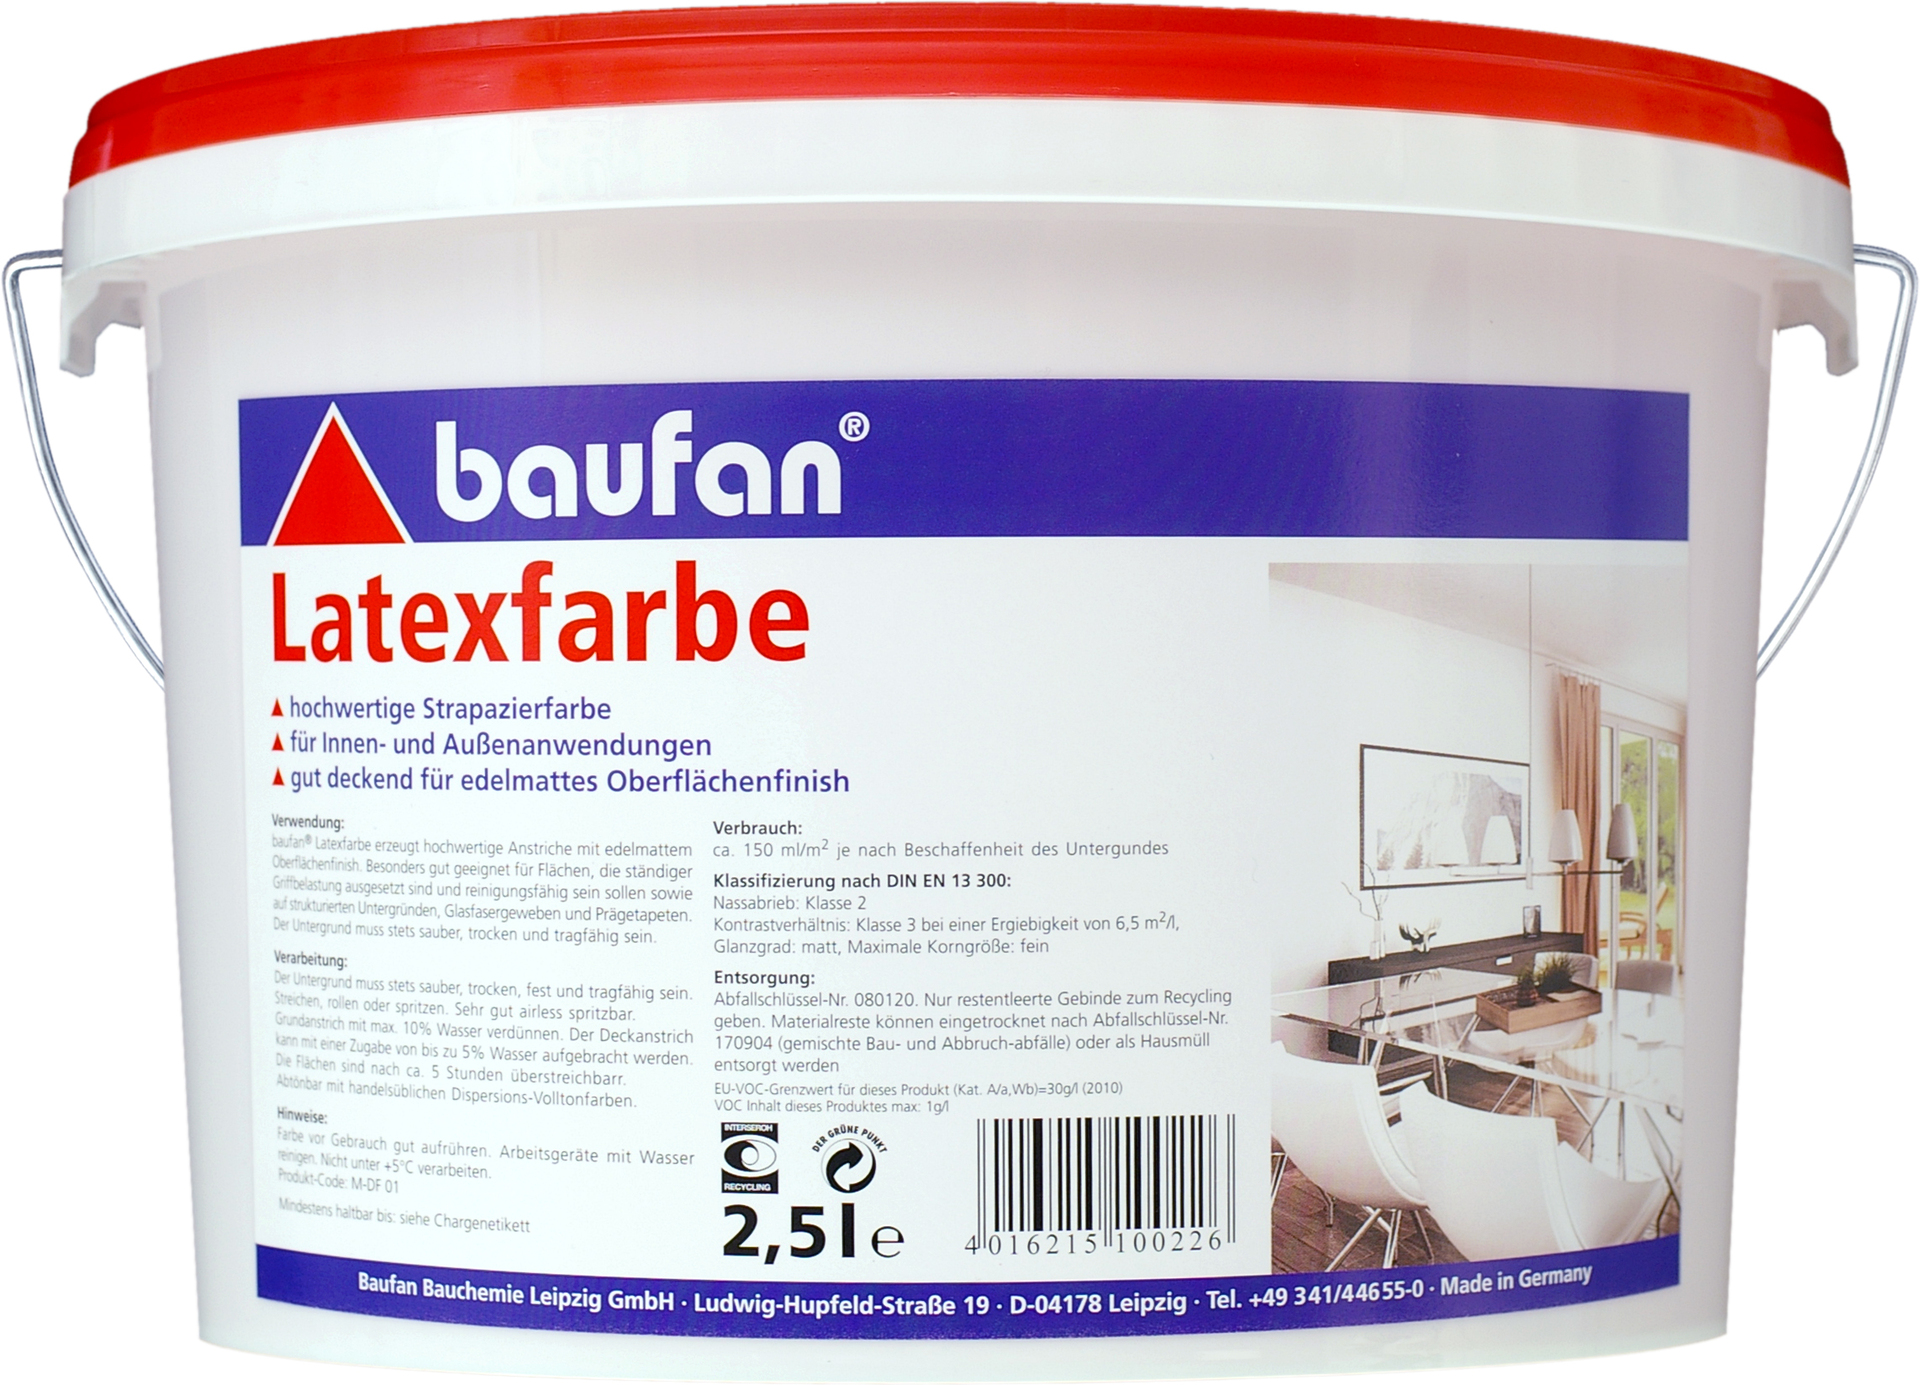 Baufan Bauchemie Leipzig GmbH Baufan Latexfarbe